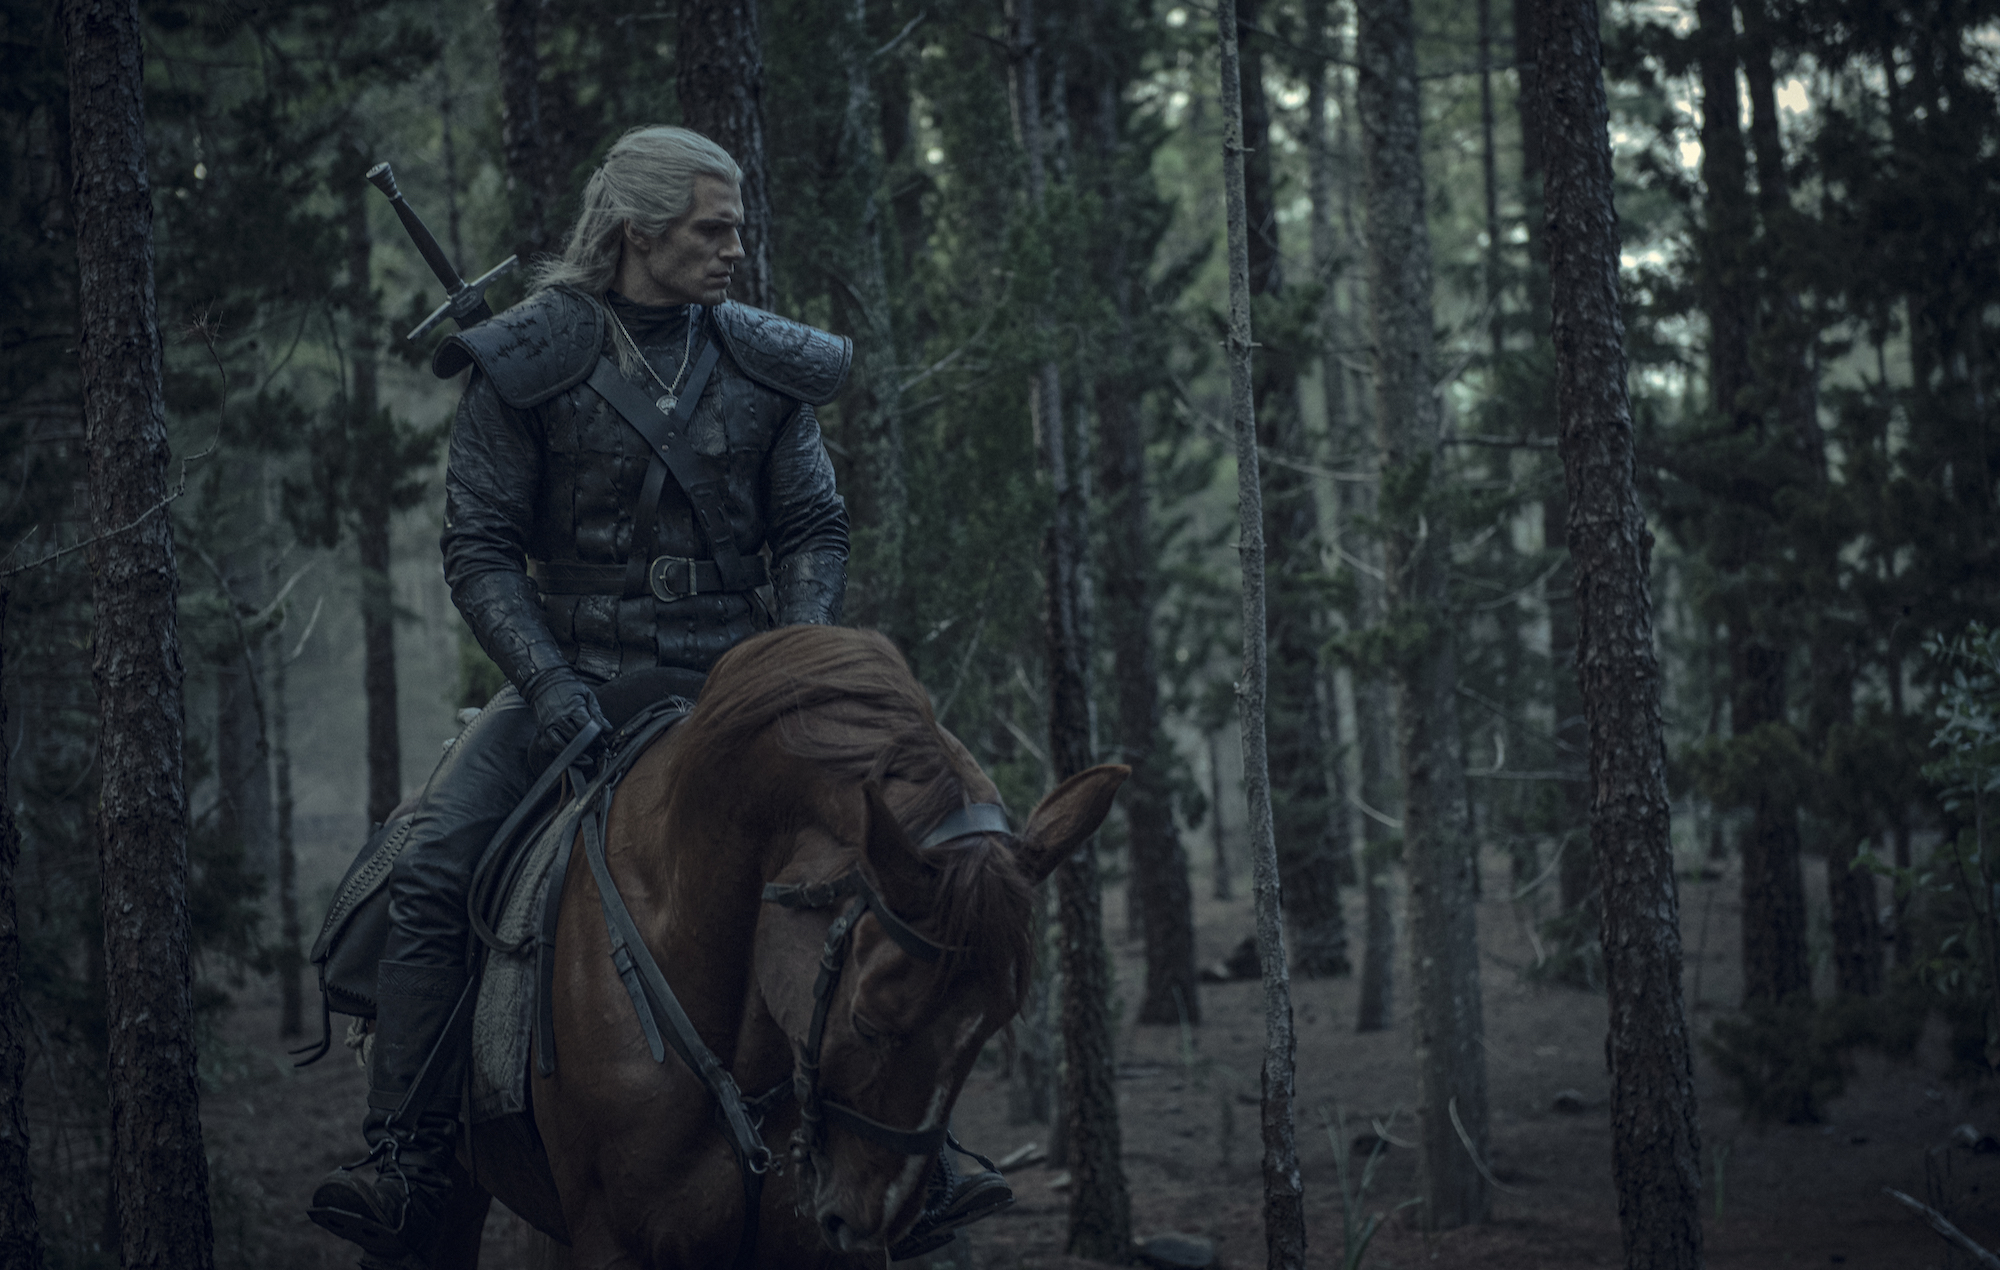 People 2000x1270 The Witcher Netflix Netflix TV Series Henry Cavill Geralt of Rivia men actor horse The Witcher (TV Series) Płotka (horse)